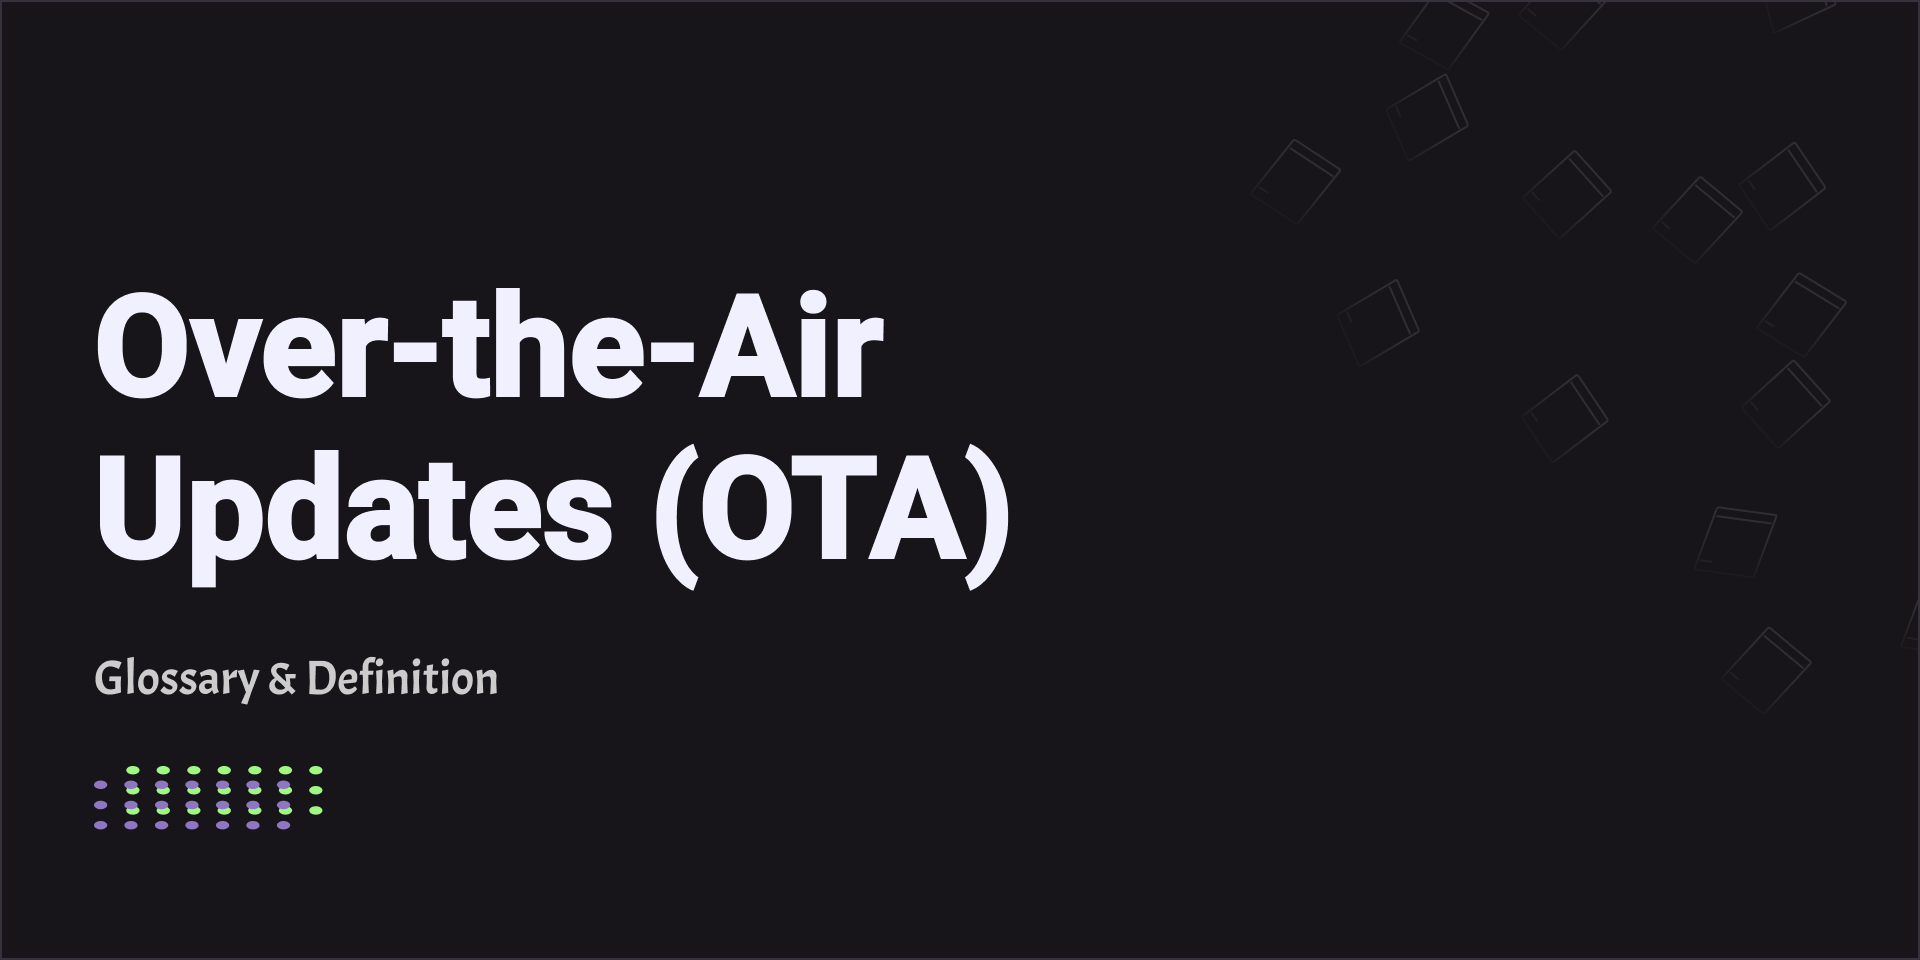 Over-the-Air Updates (OTA)